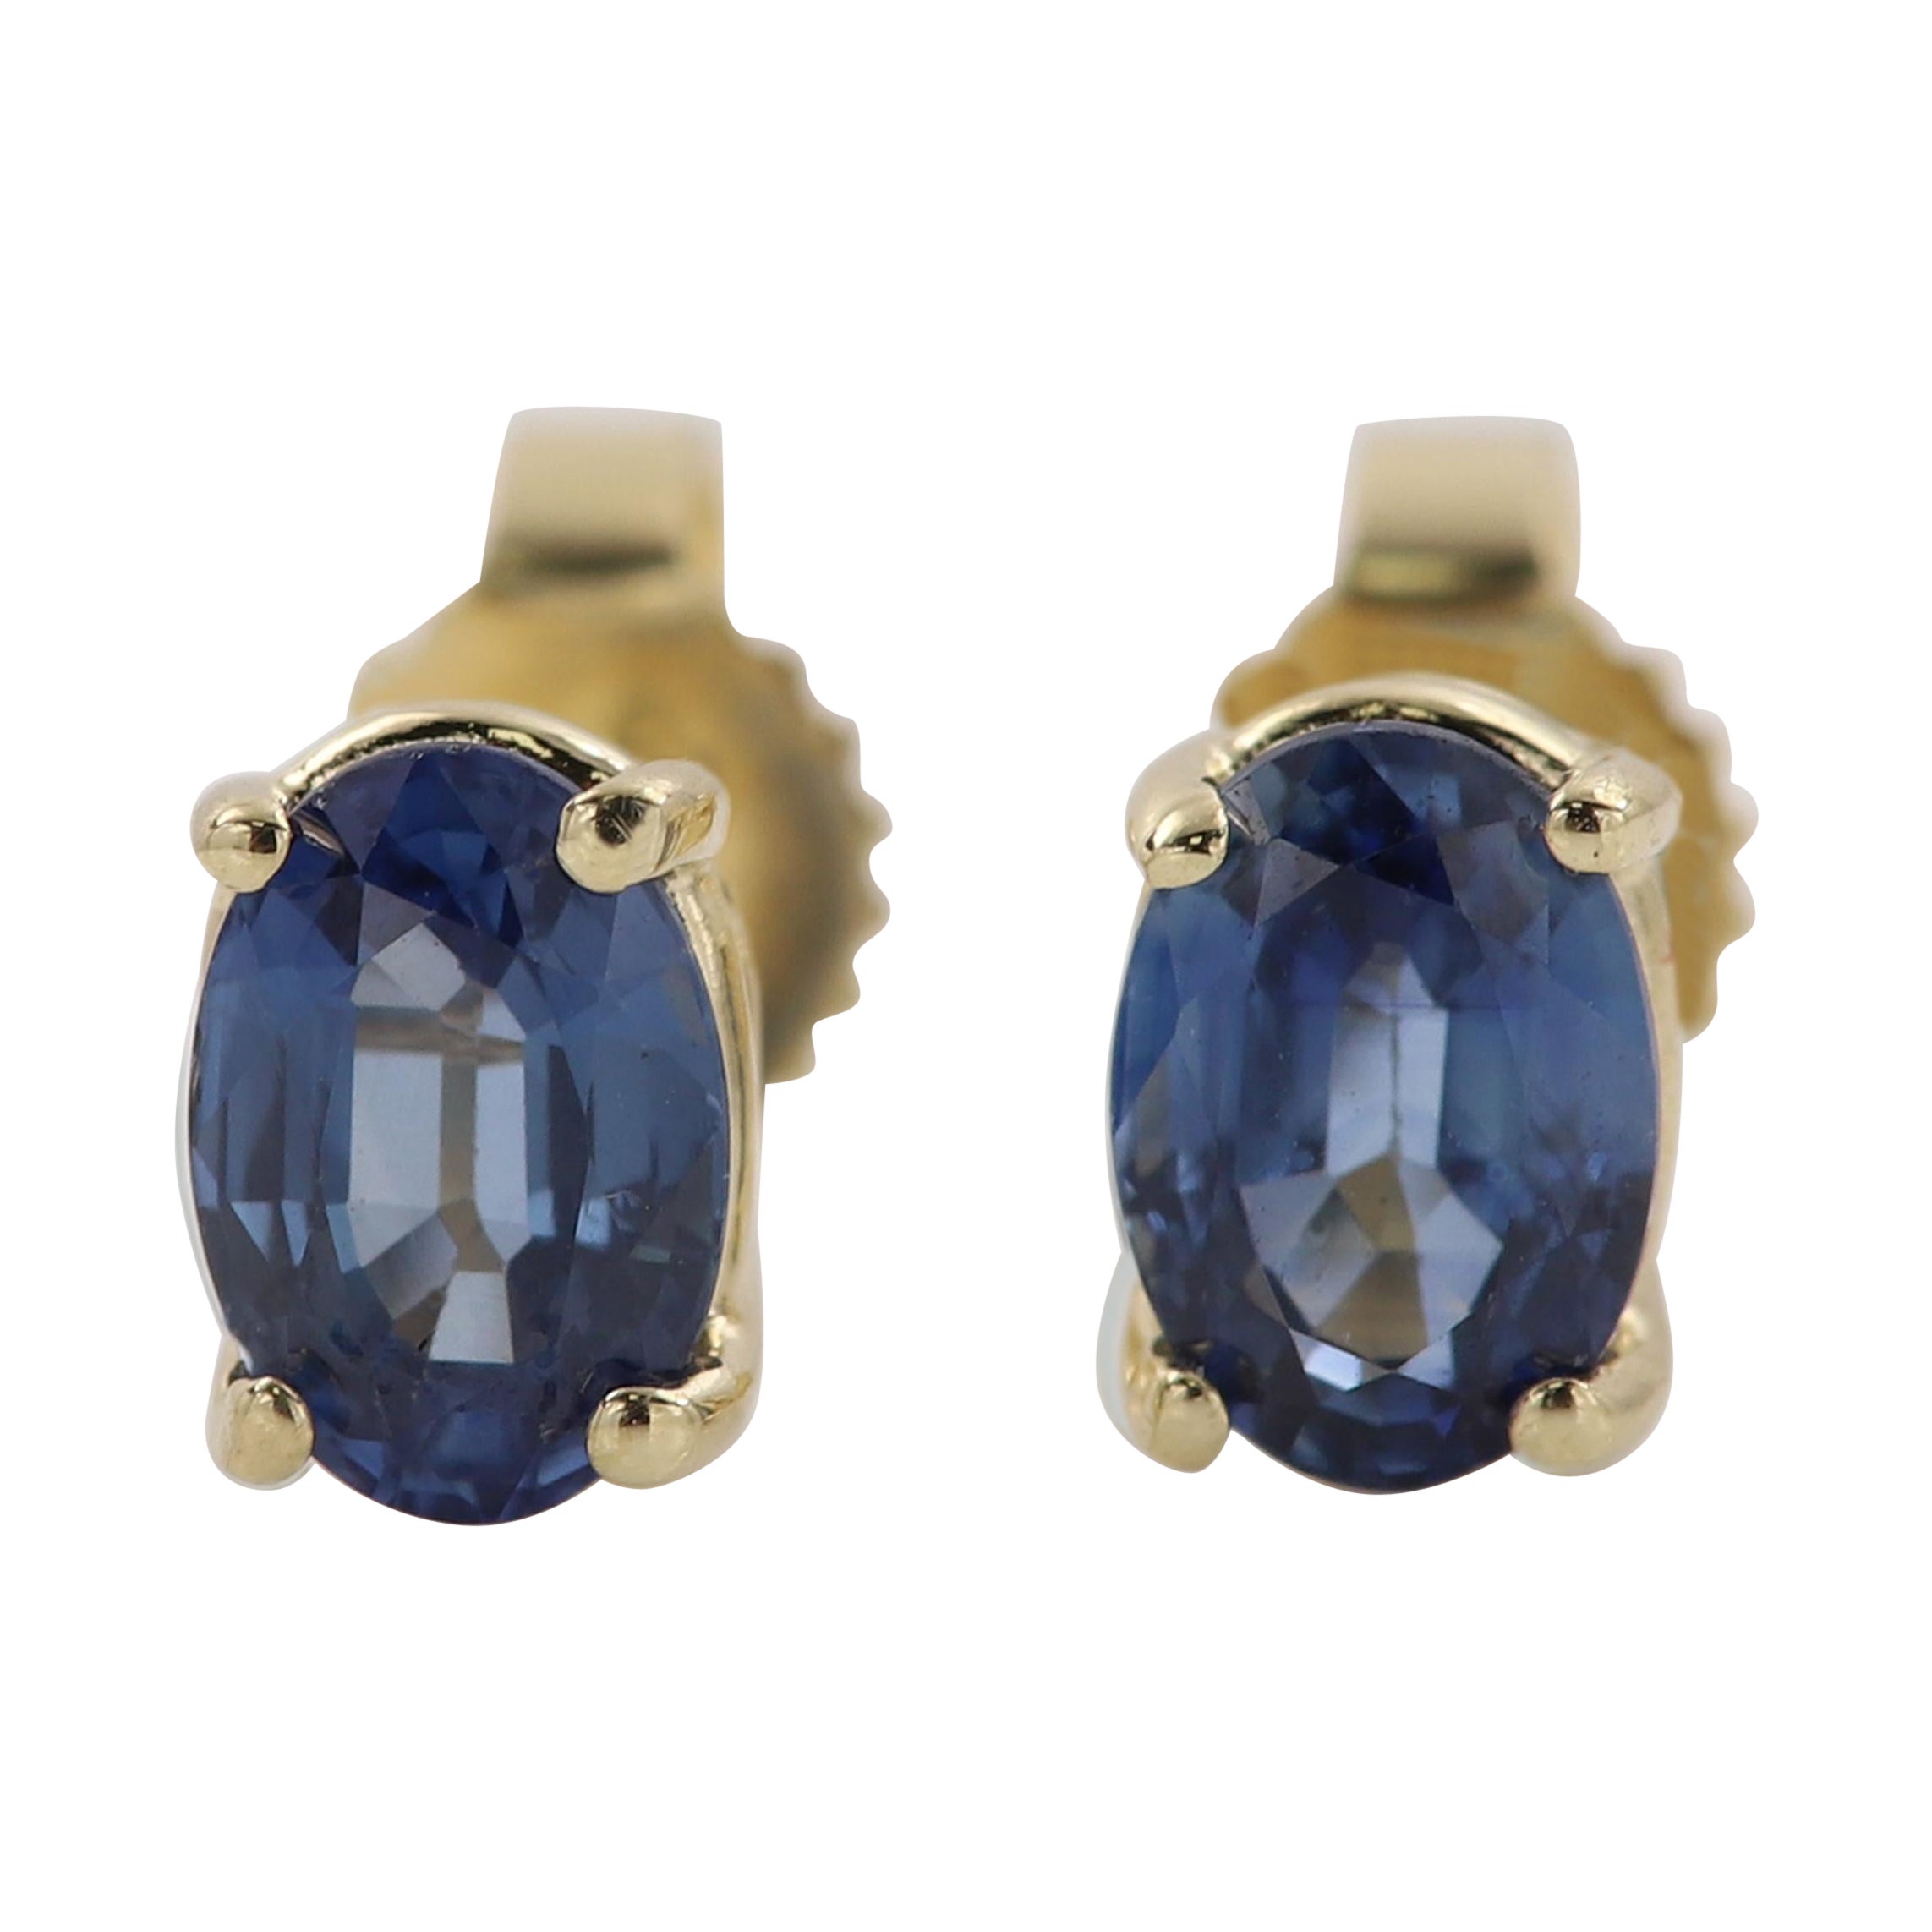 Oval Blue Sapphire Earring Studs 6 x 4 Natural Sapphire 14 Karat Yellow gold